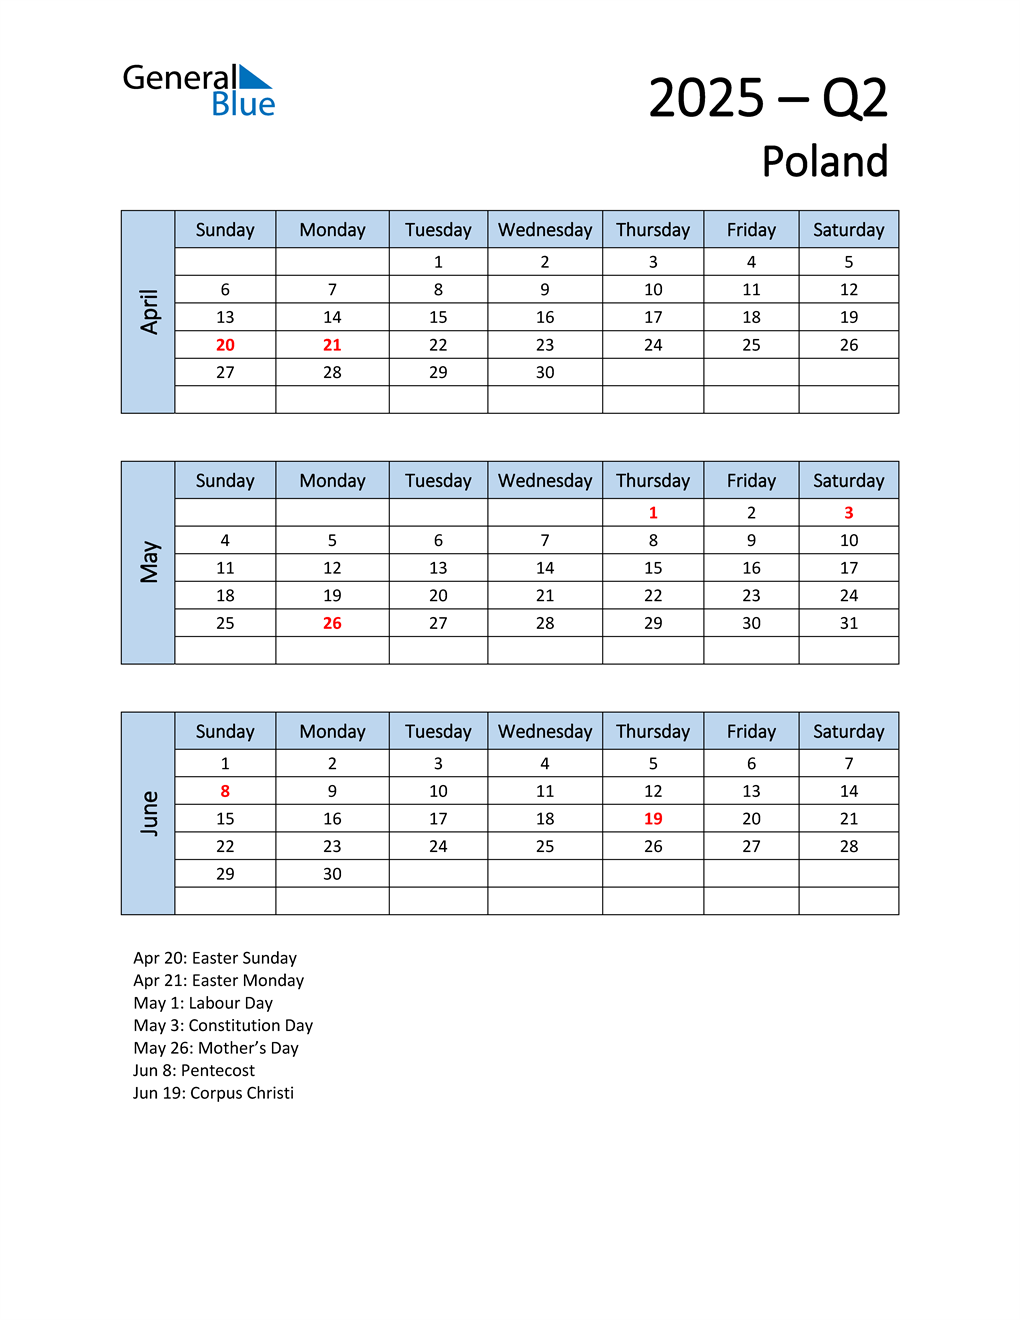  Free Q2 2025 Calendar for Poland